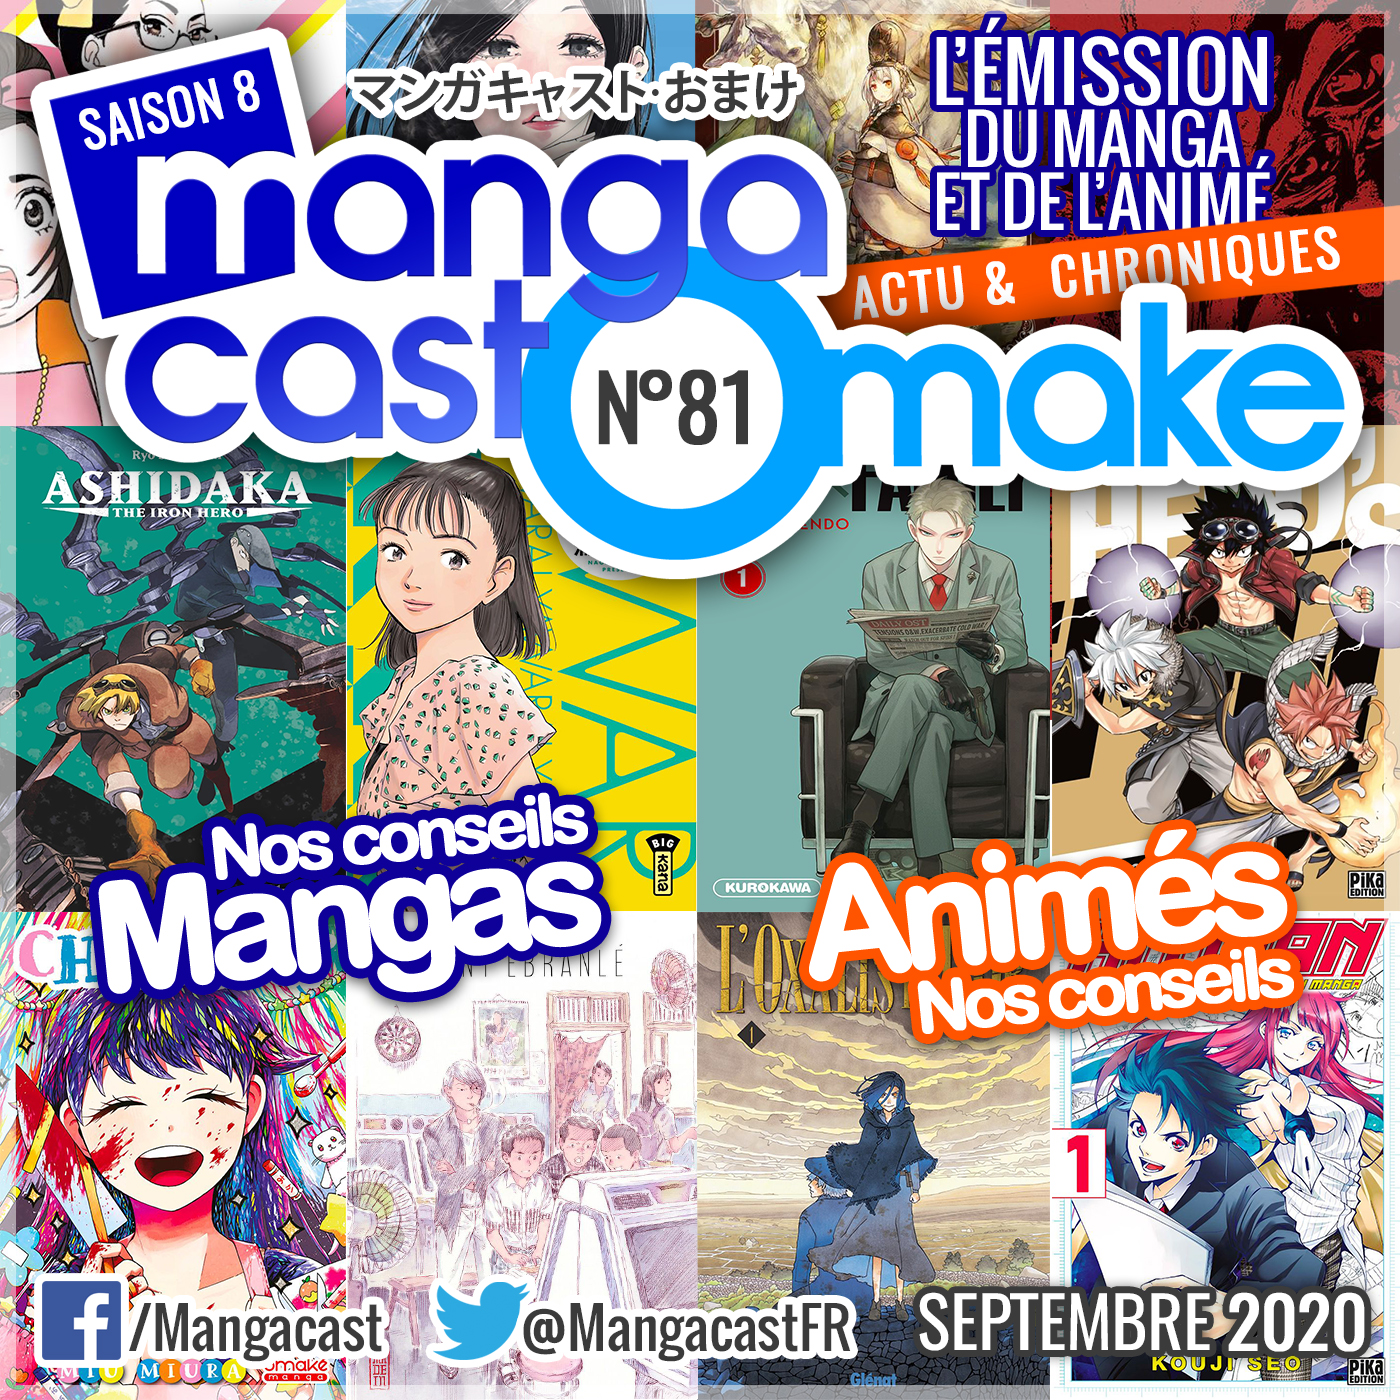 Cartouche du Mangacast Omake n°81 du mois de septembre 2020